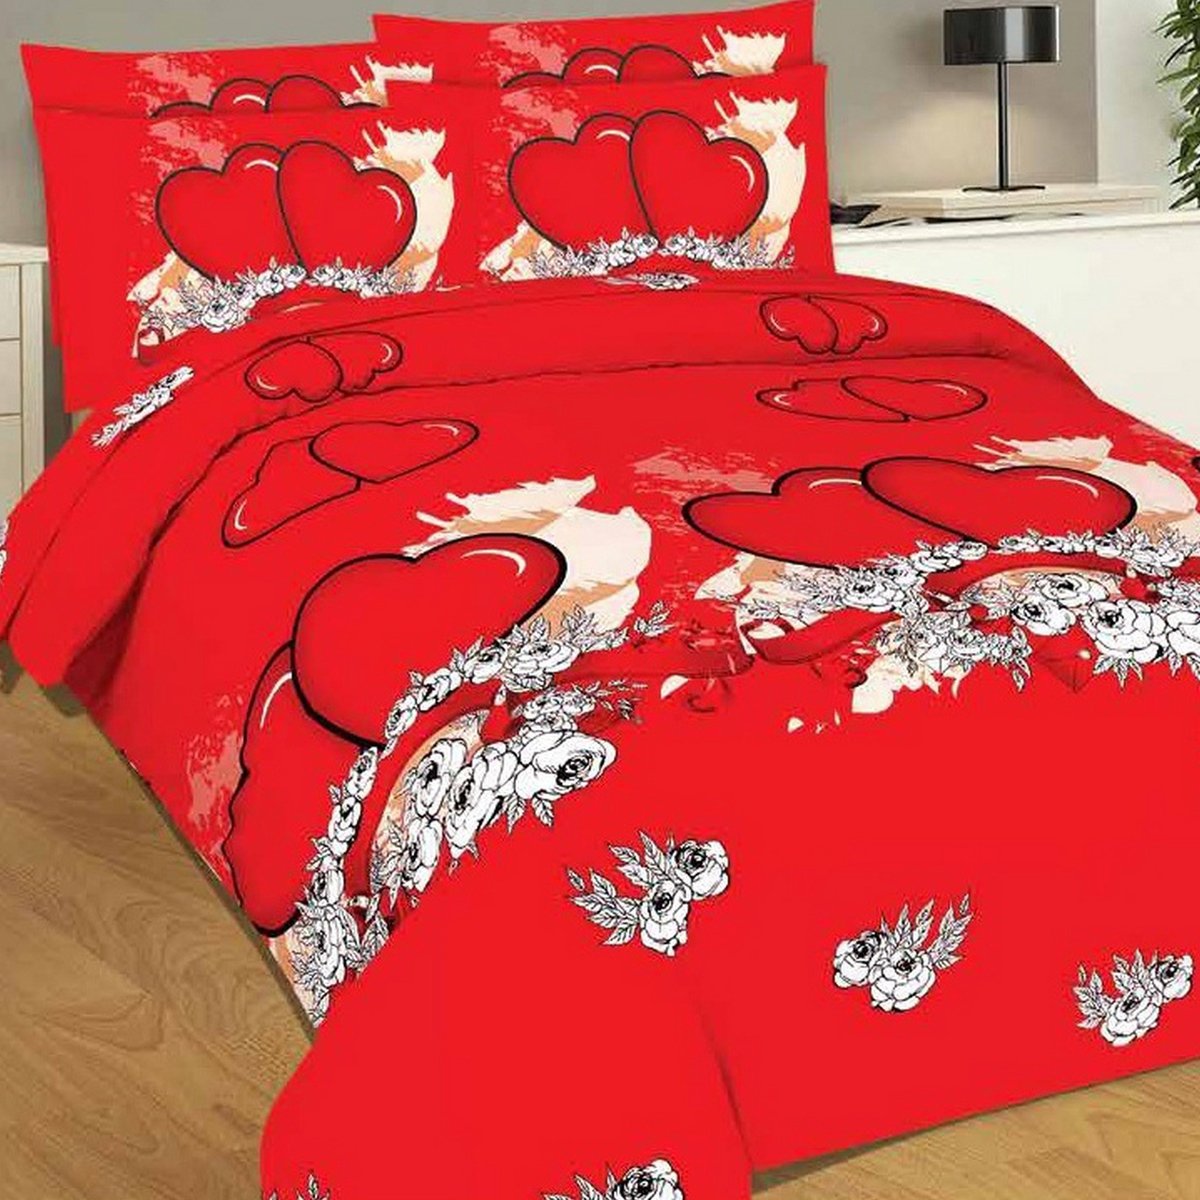 Bravo King Comforter 4pcs Set Couple